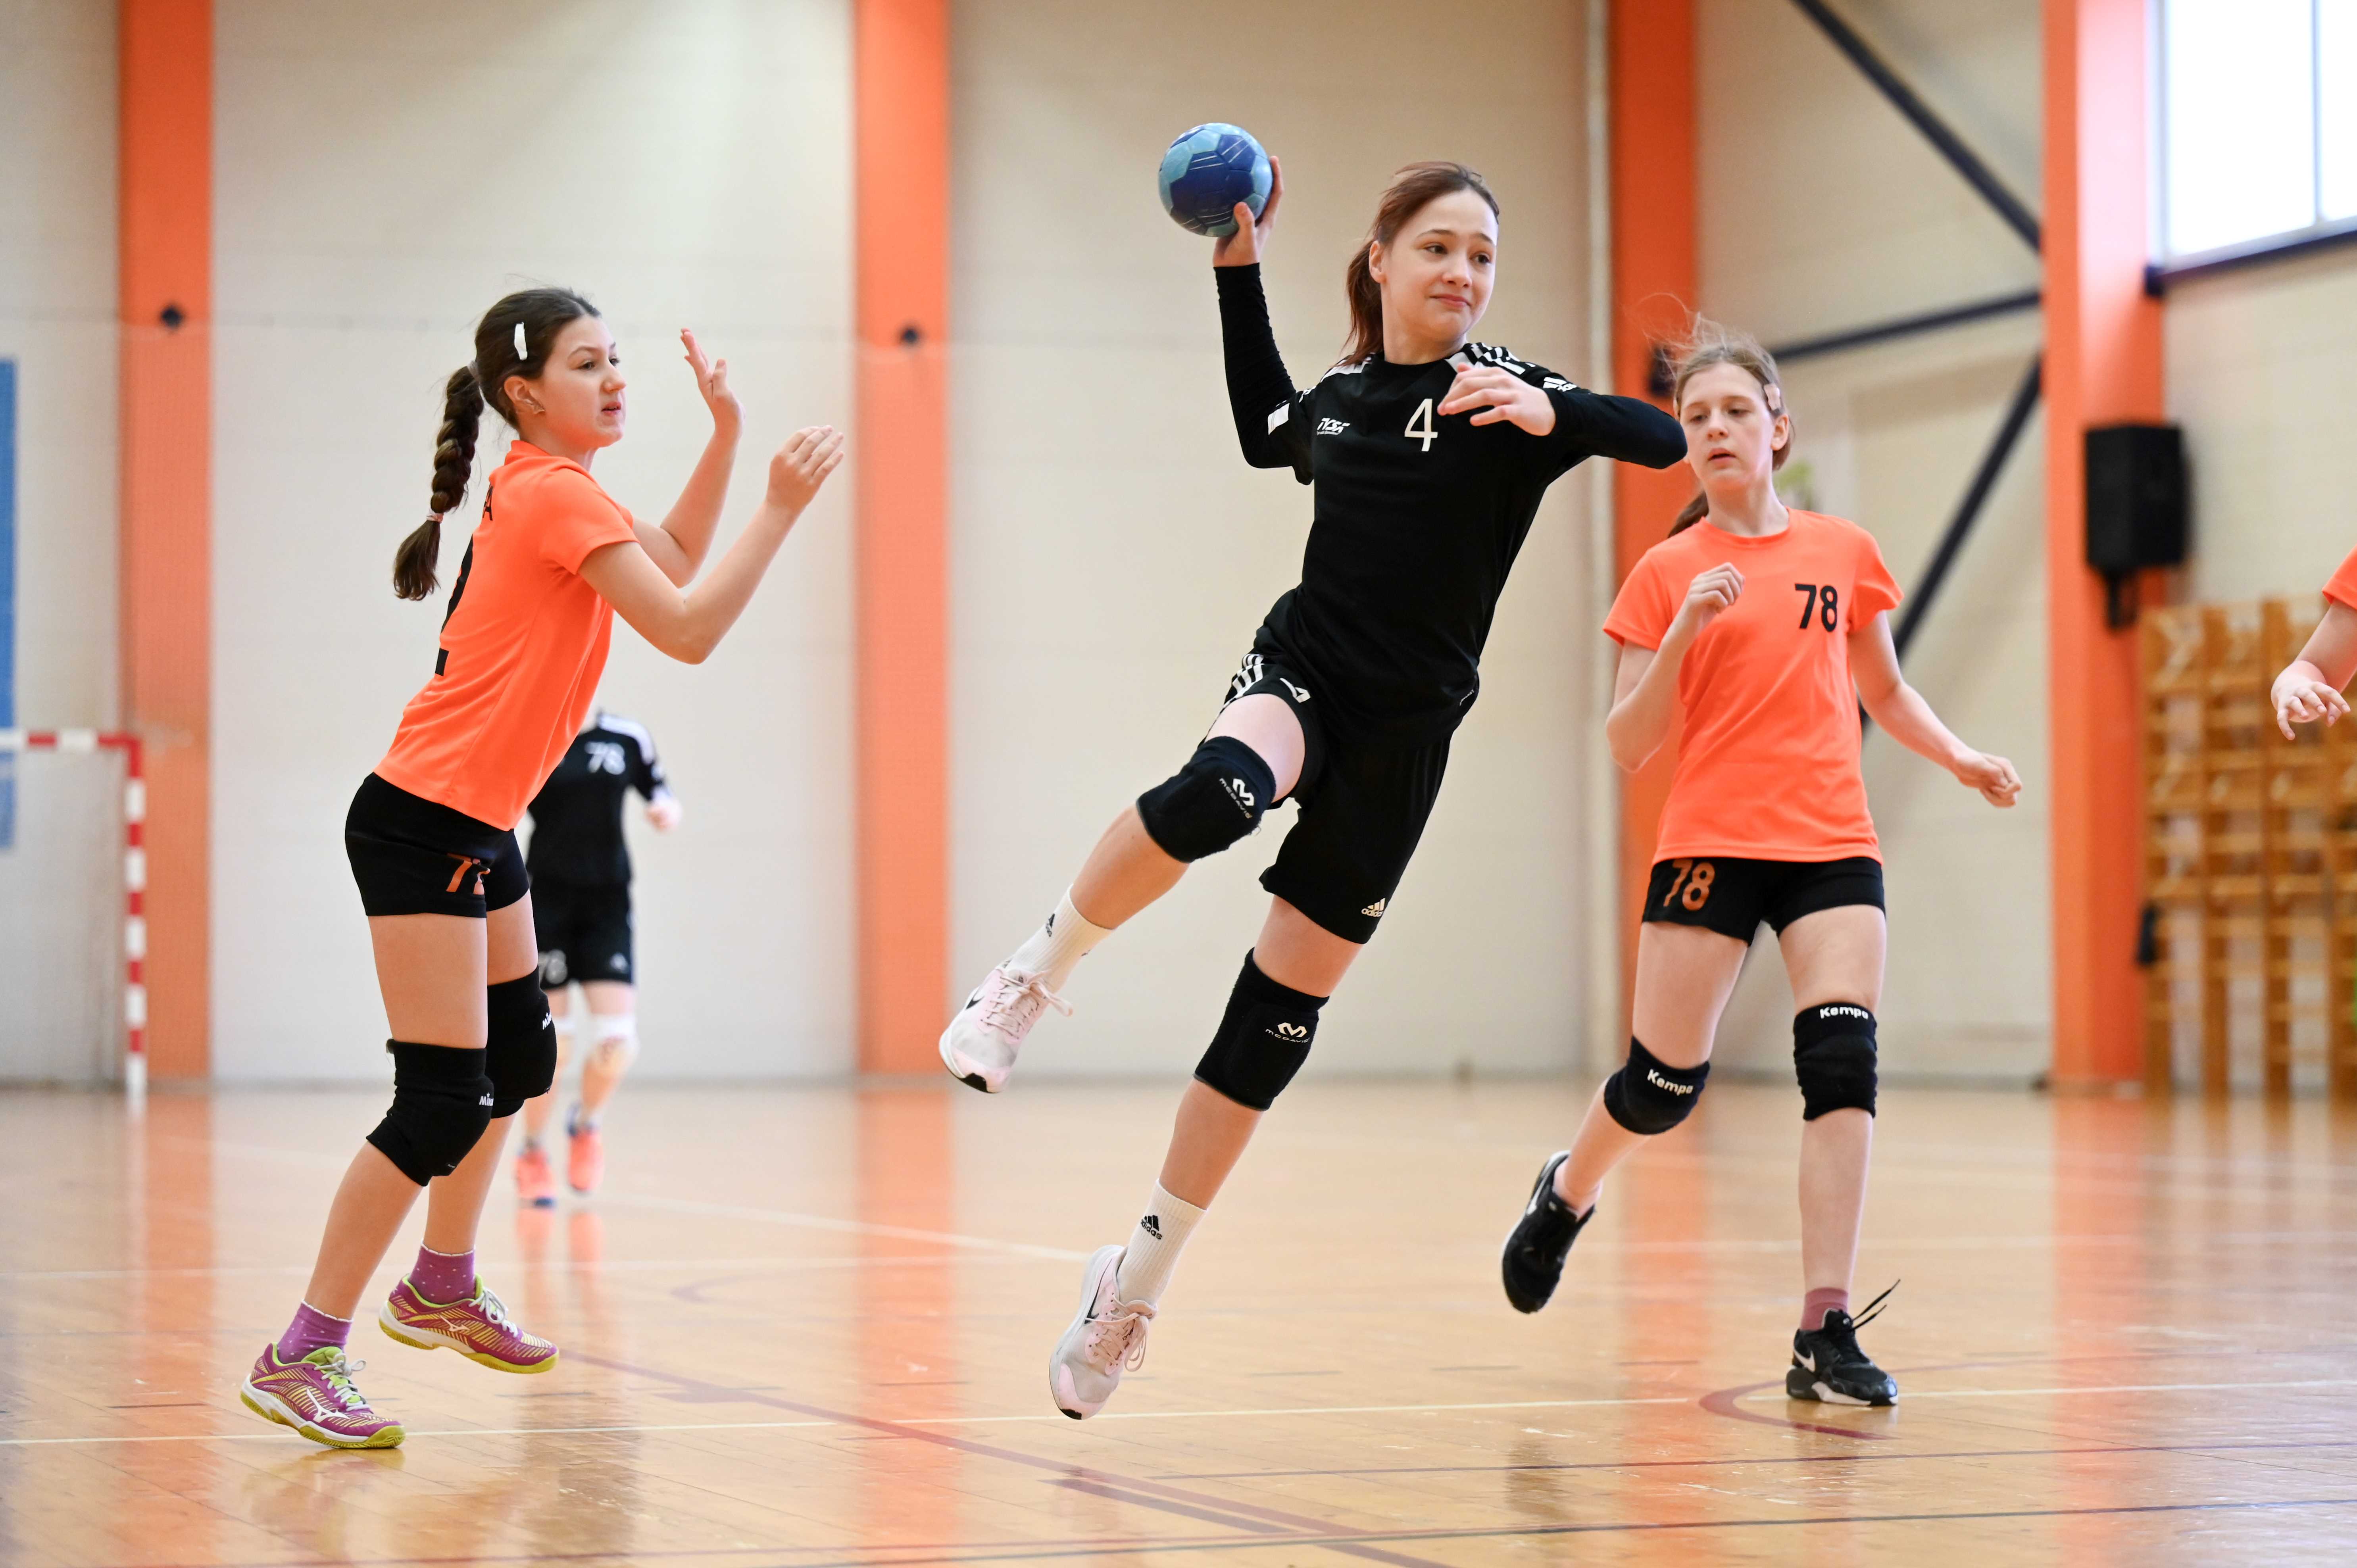 Tütarlaste D2 vanuseklassi 2024 Eesti meistrivõistlustel käsipallis on jäänud mängida veel viimane võistluspäev